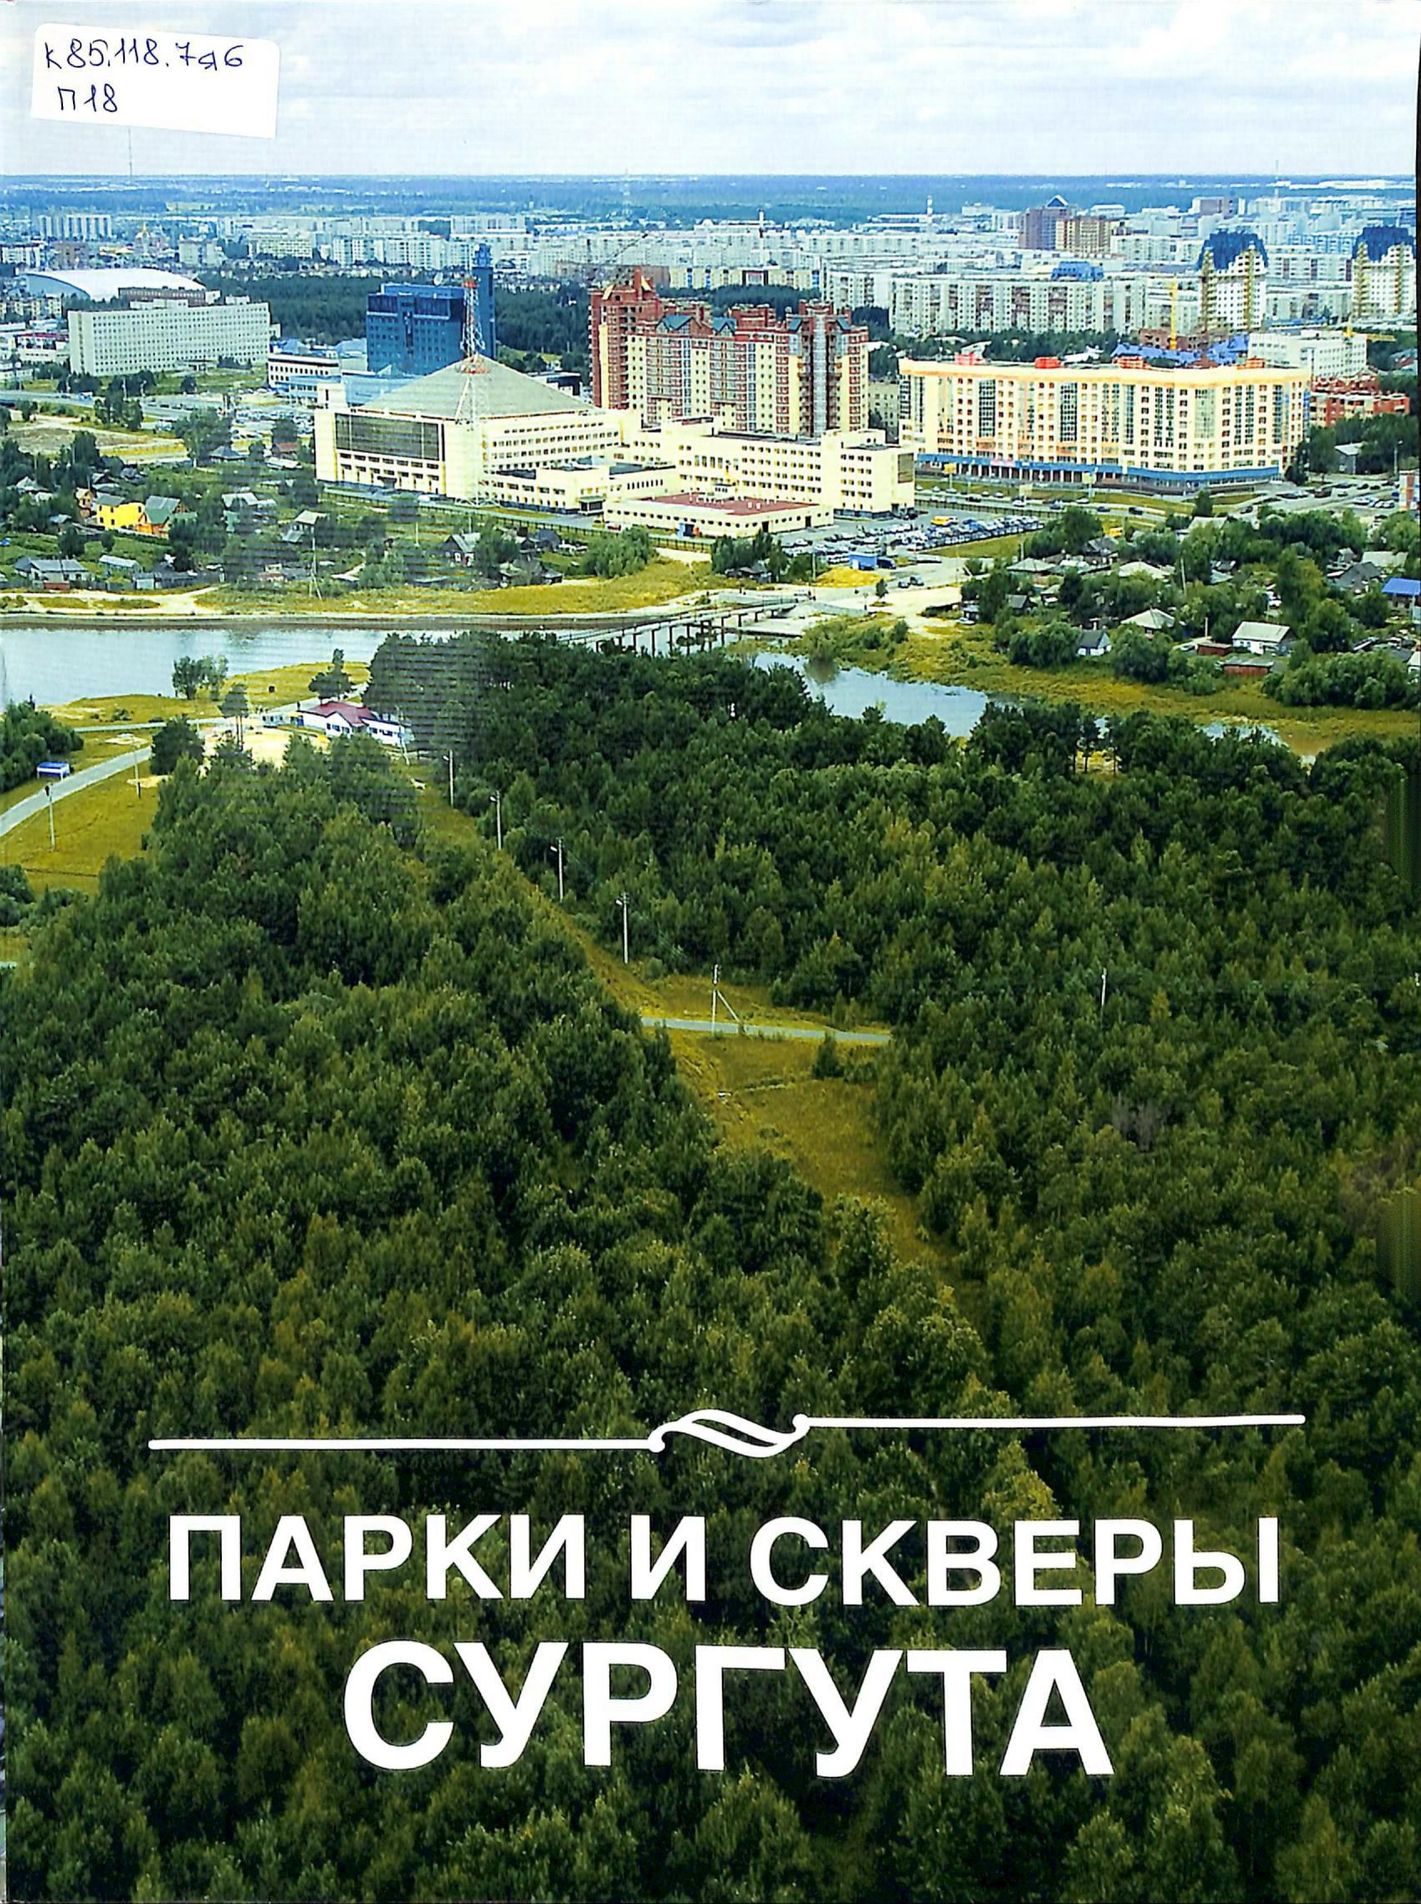 Обзор состояния окружающей среды города Сургута